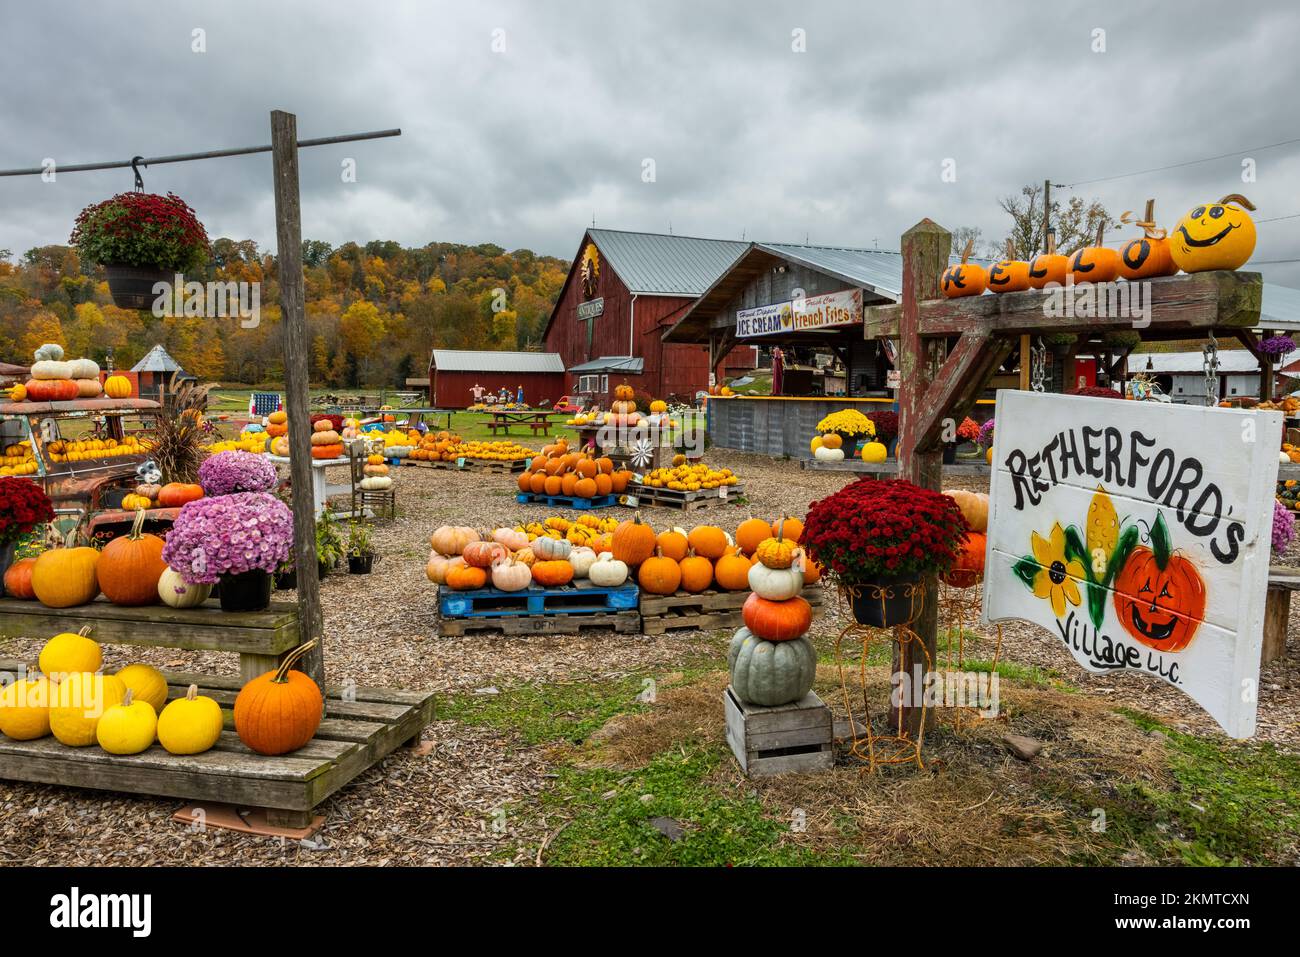 Retherfords Village décoré pour Halloween, Benton, Pennsylvanie Banque D'Images